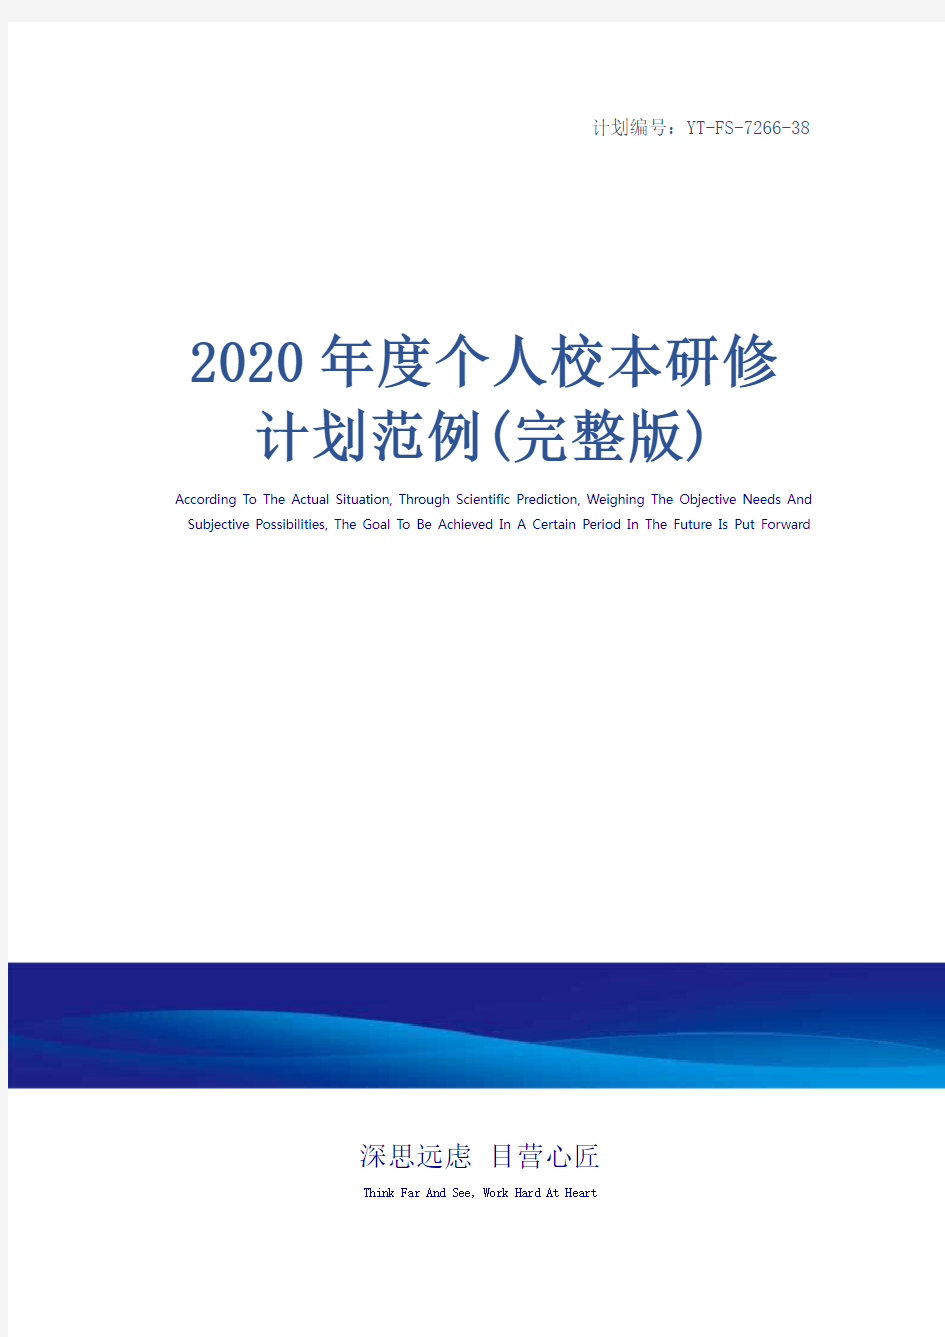 2020年度个人校本研修计划范例(完整版)